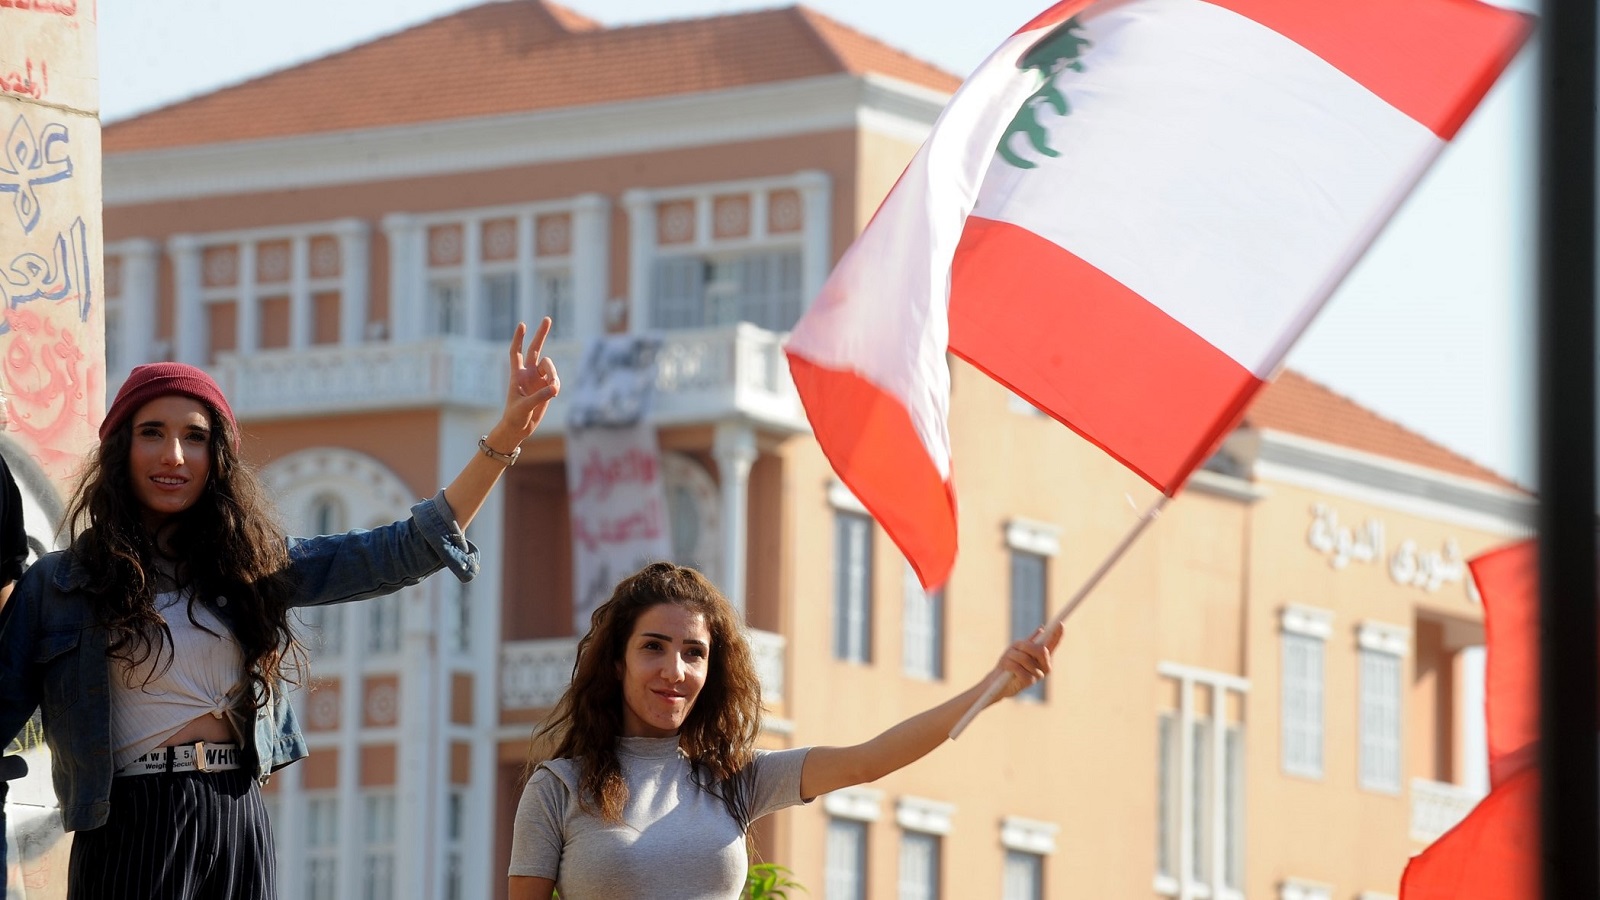 "جبهة مدنية وطنية": حياد لبنان.. وحلول حتى للكهرباء